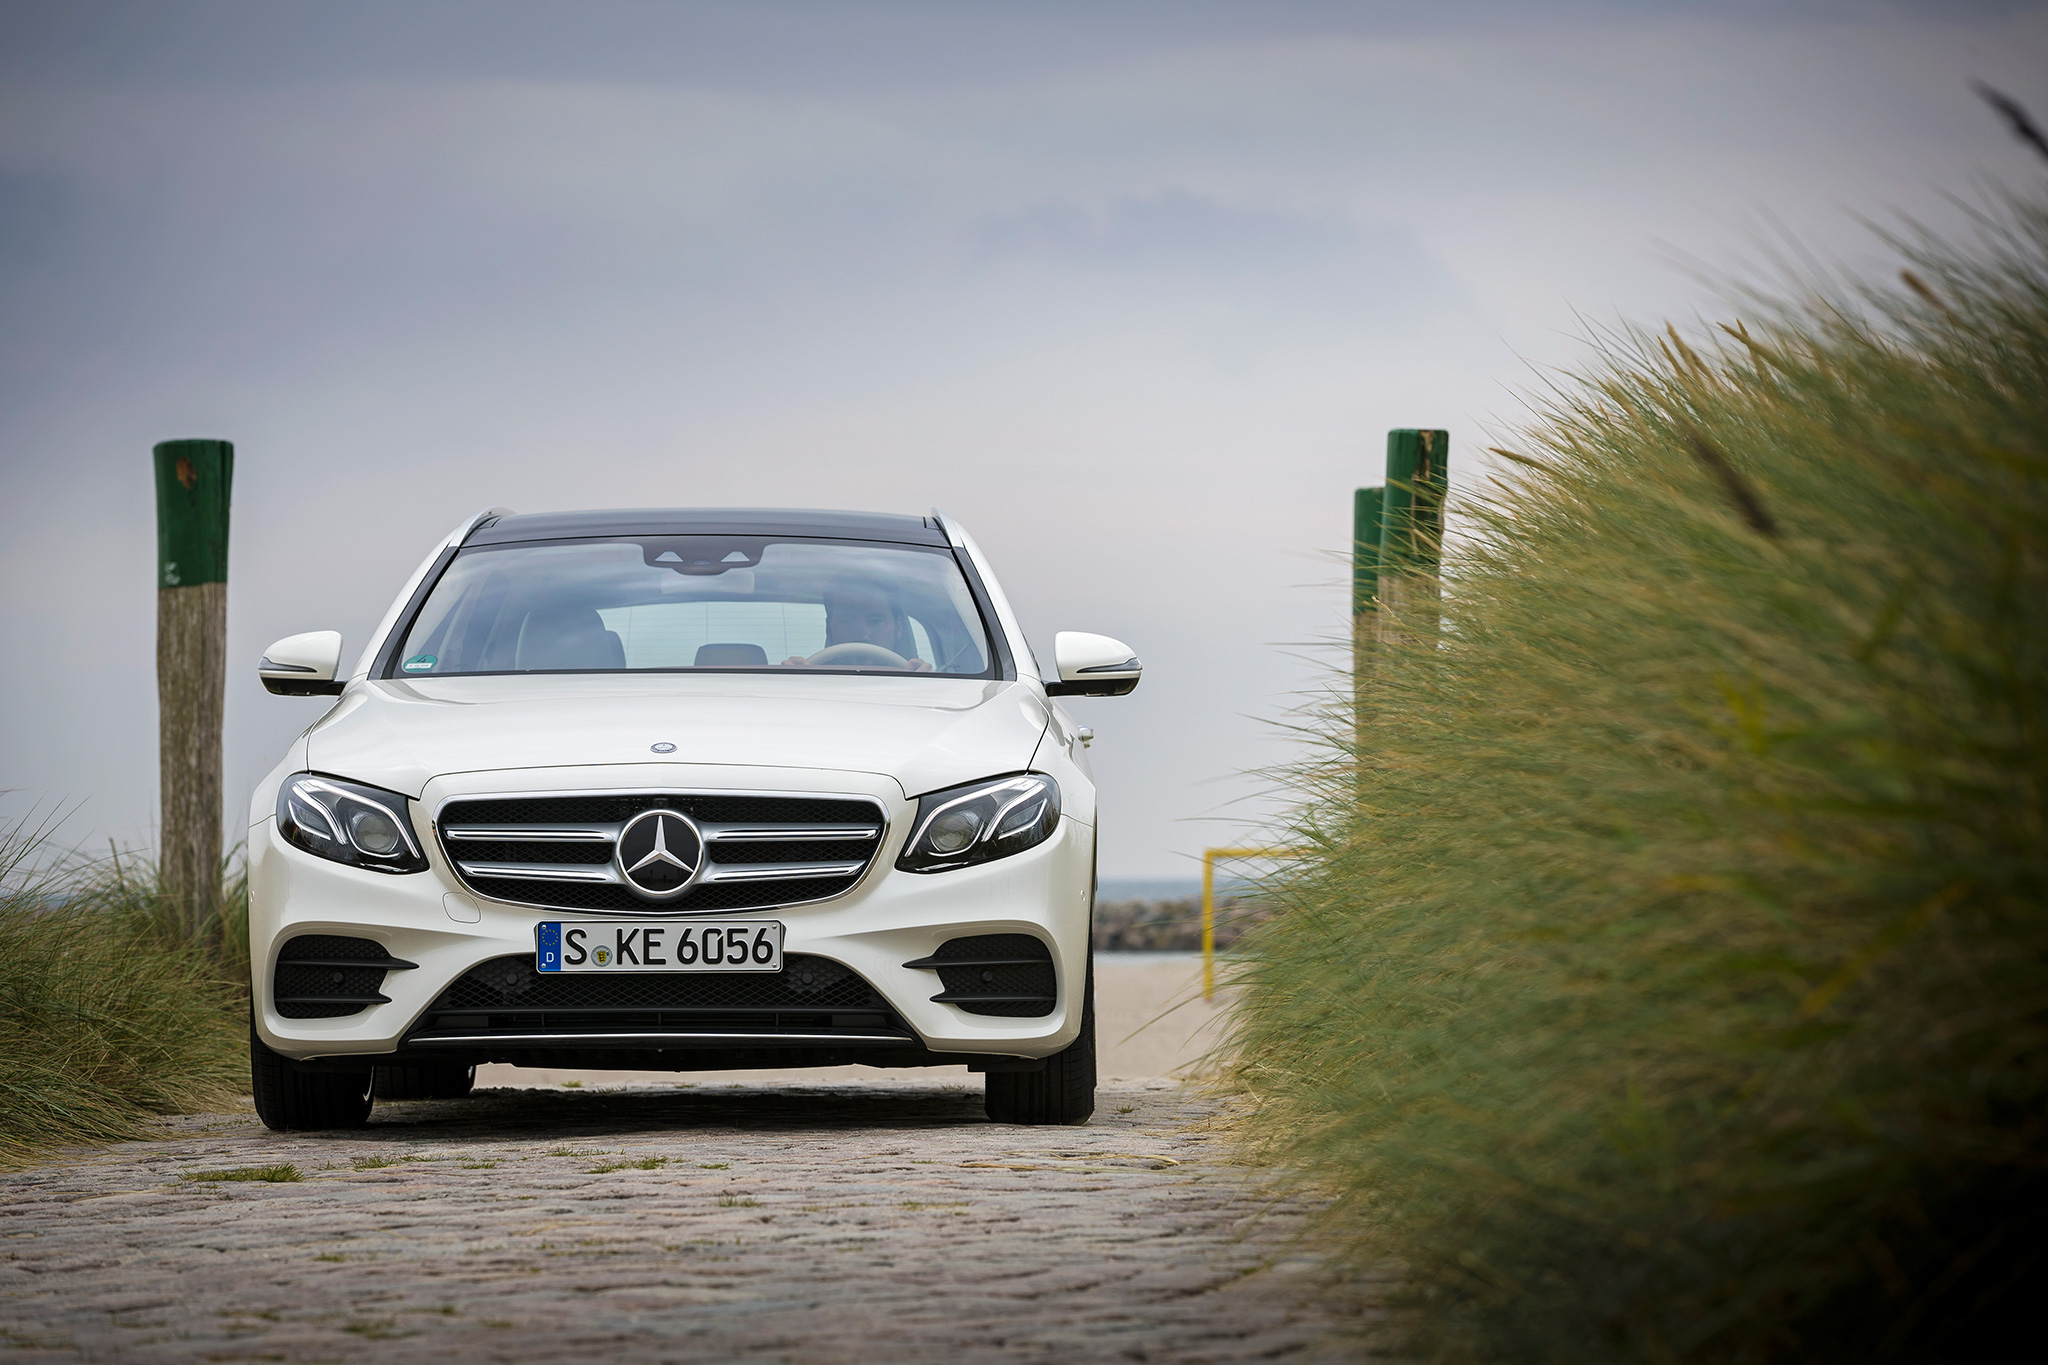 Mercedes-Benz HD wallpapers, Desktop wallpaper - most viewed